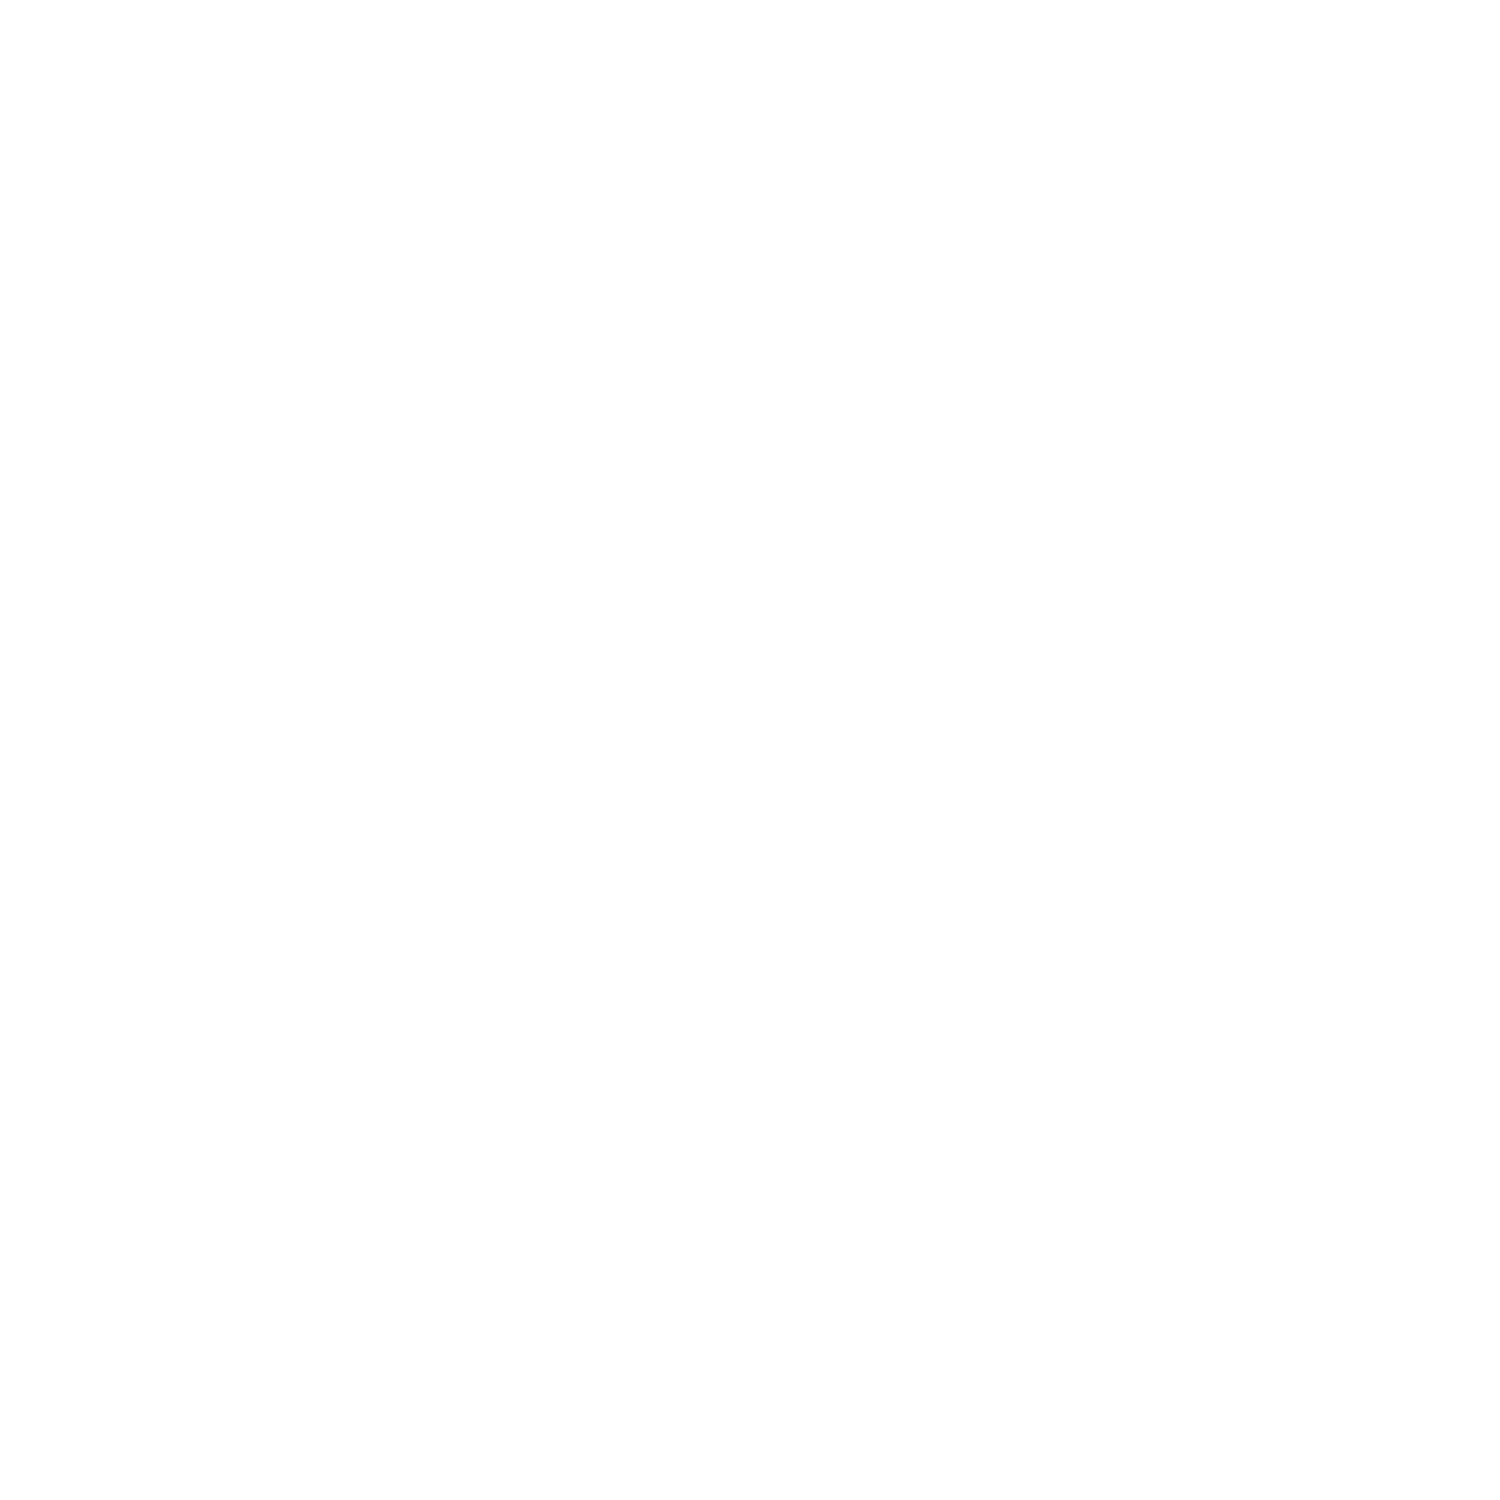 Tahoe Disc Golf Adventures